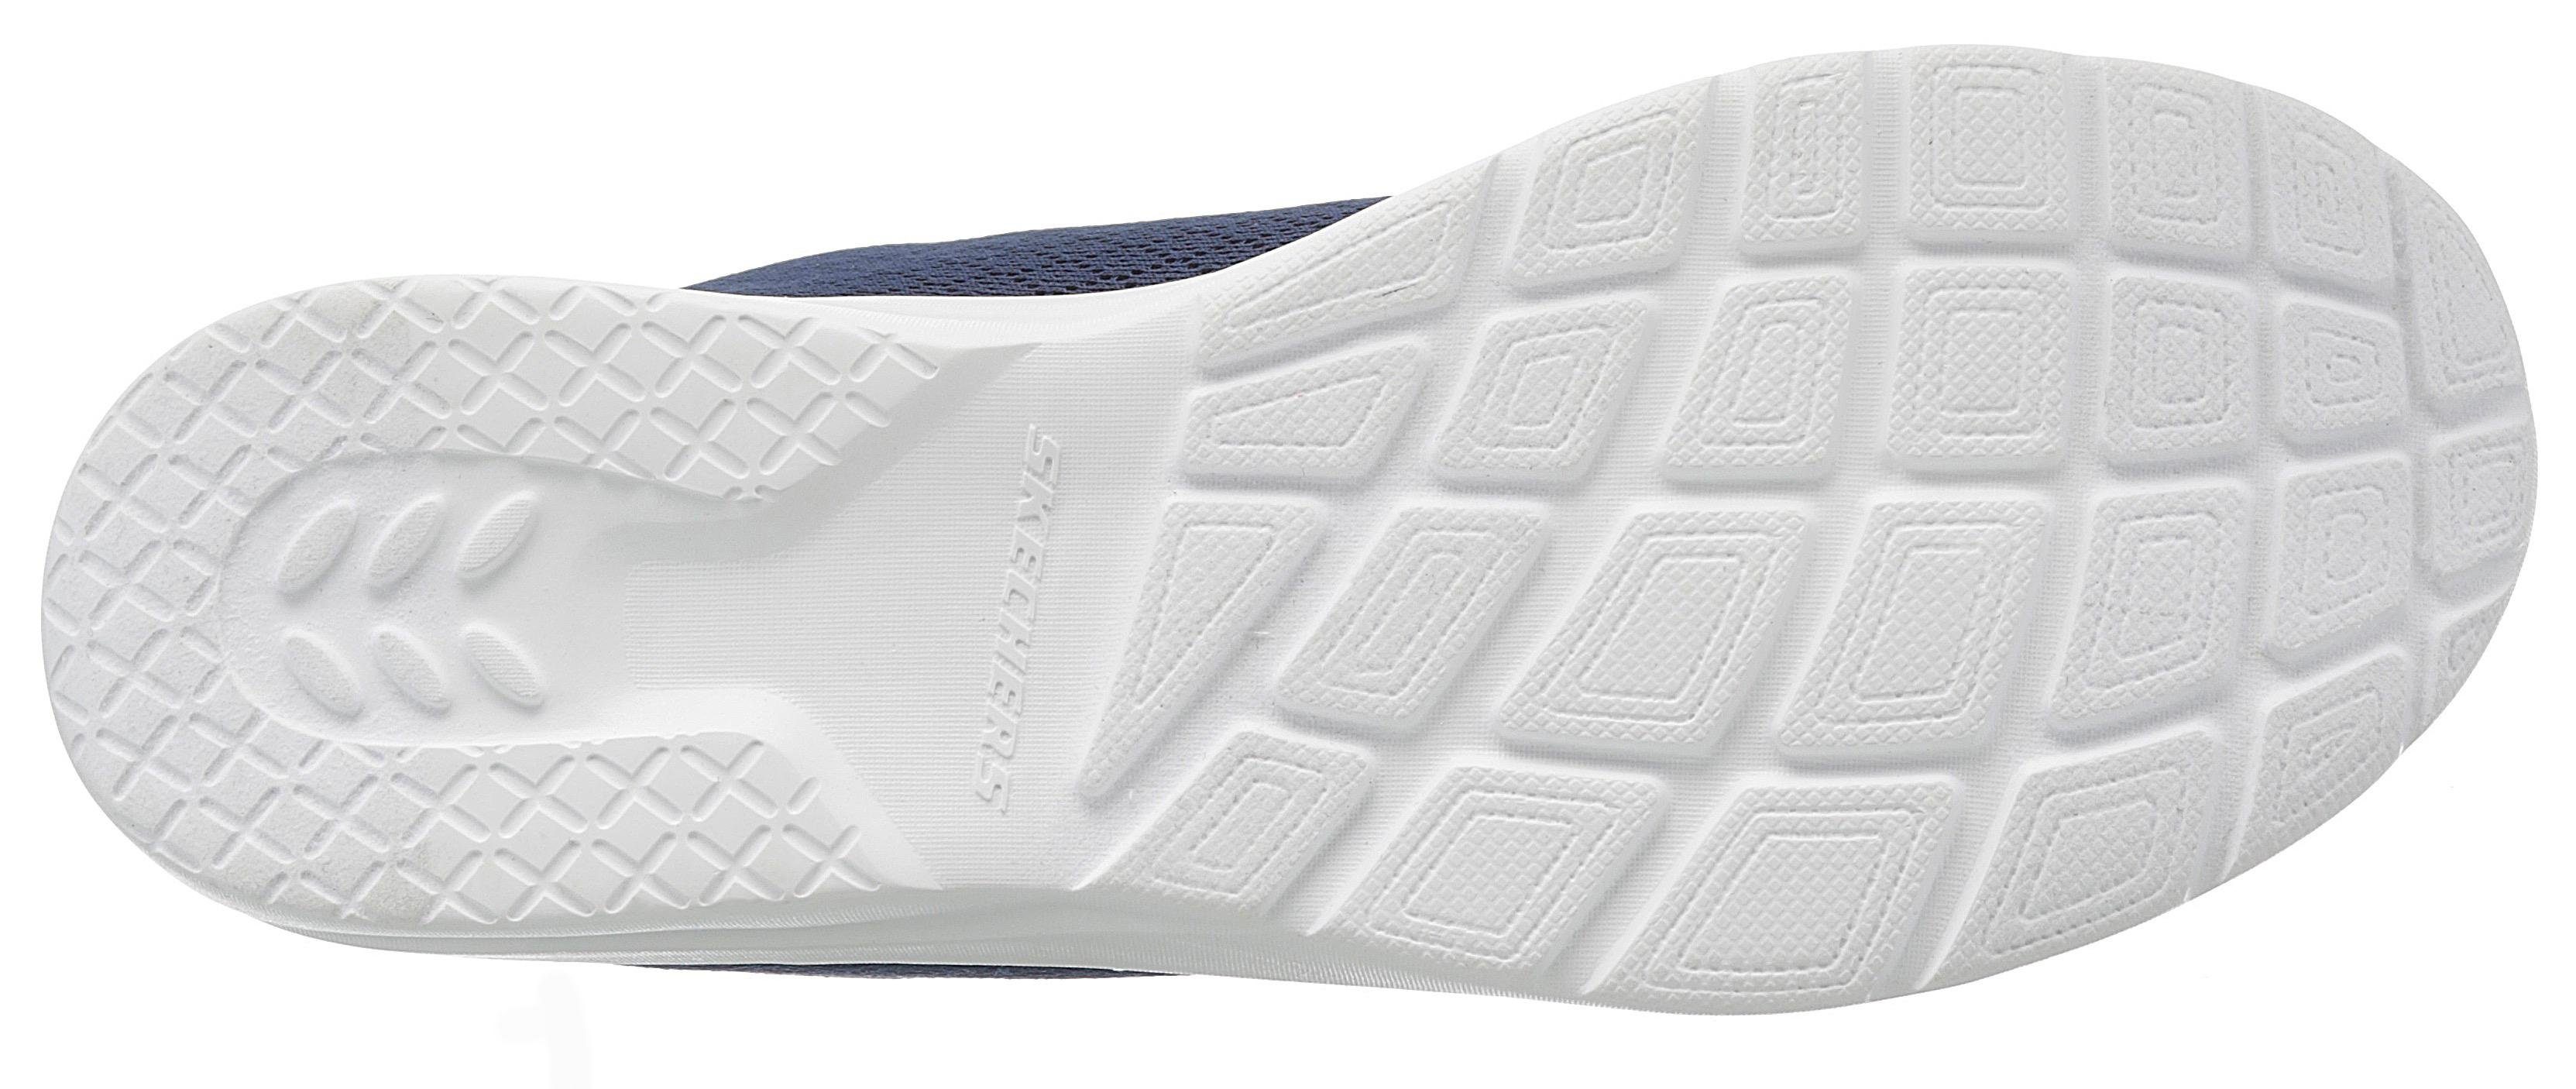 Eye Dynamight - Foam Memory Sneaker Skechers 2.0 to Eye mit navy